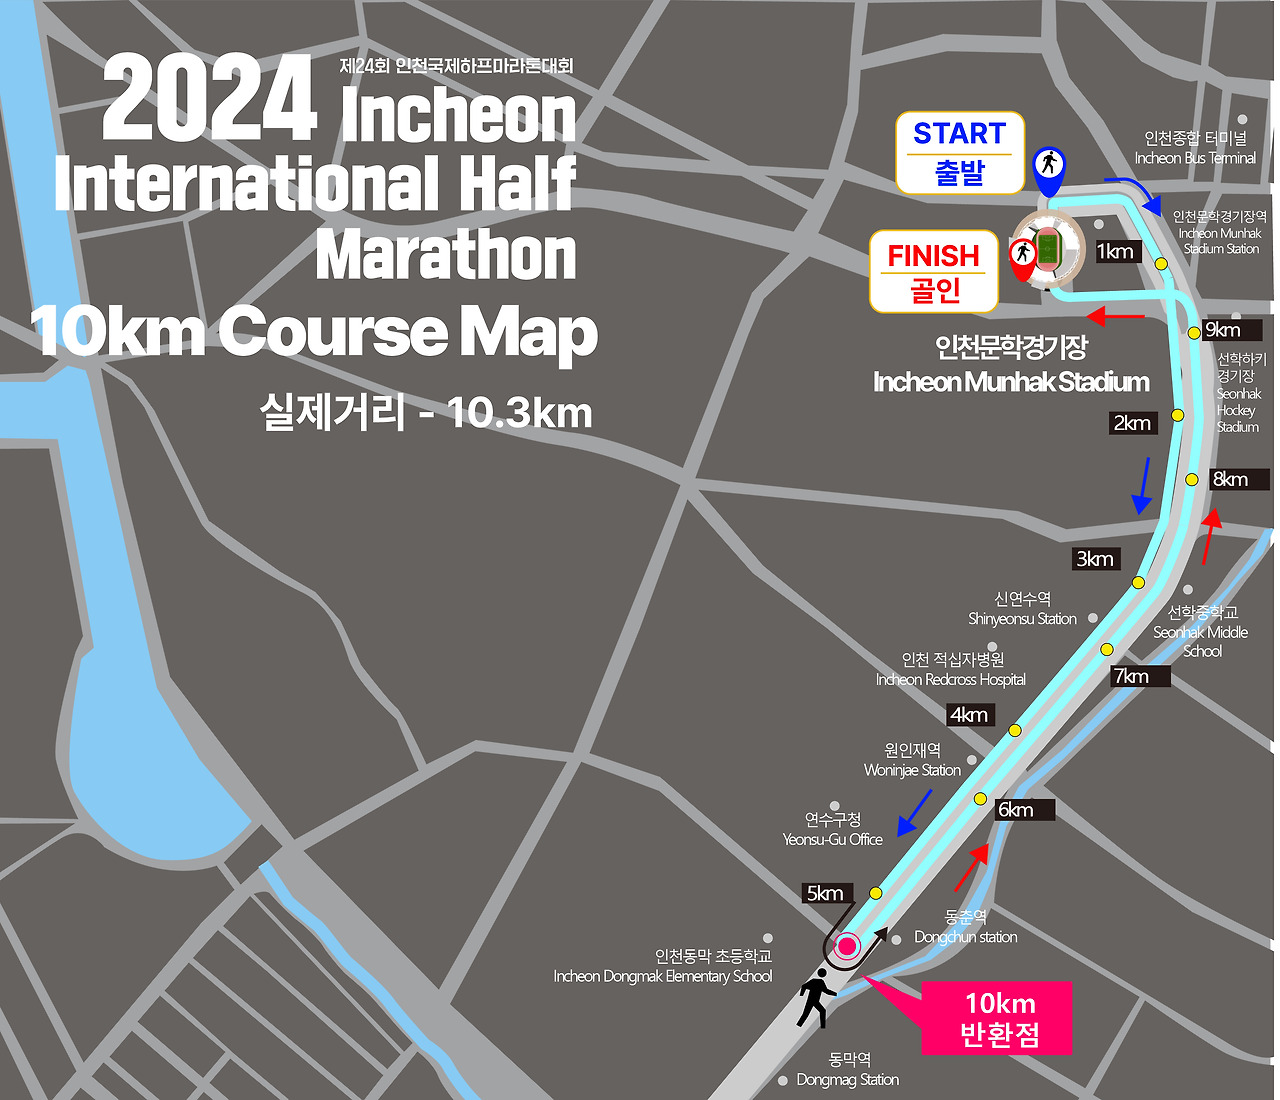 제24회 인천국제하프마라톤 대회 10km 코스 지도